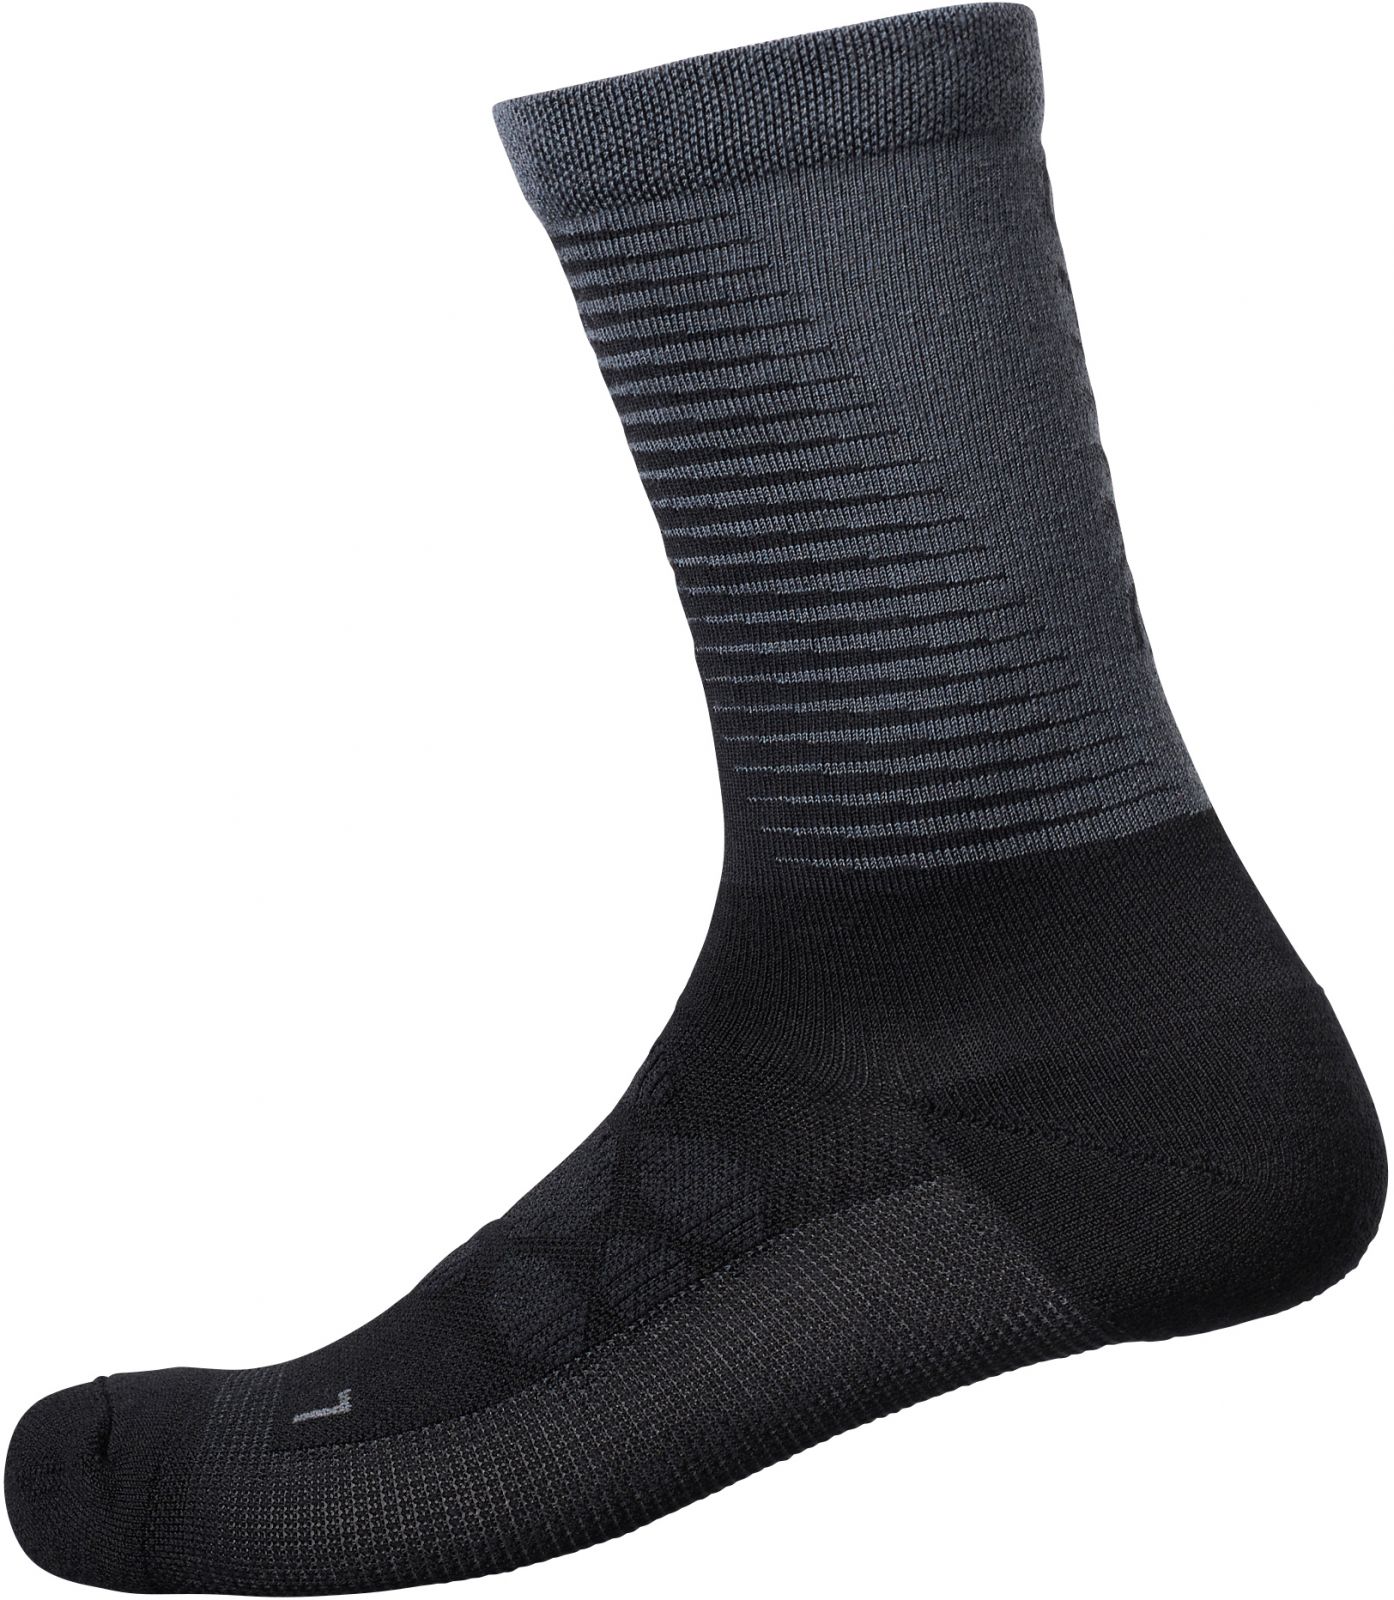 SHIMANO S-PHYRE MERINO TALL ponožky, černá/šedá, L-XL (45-48)